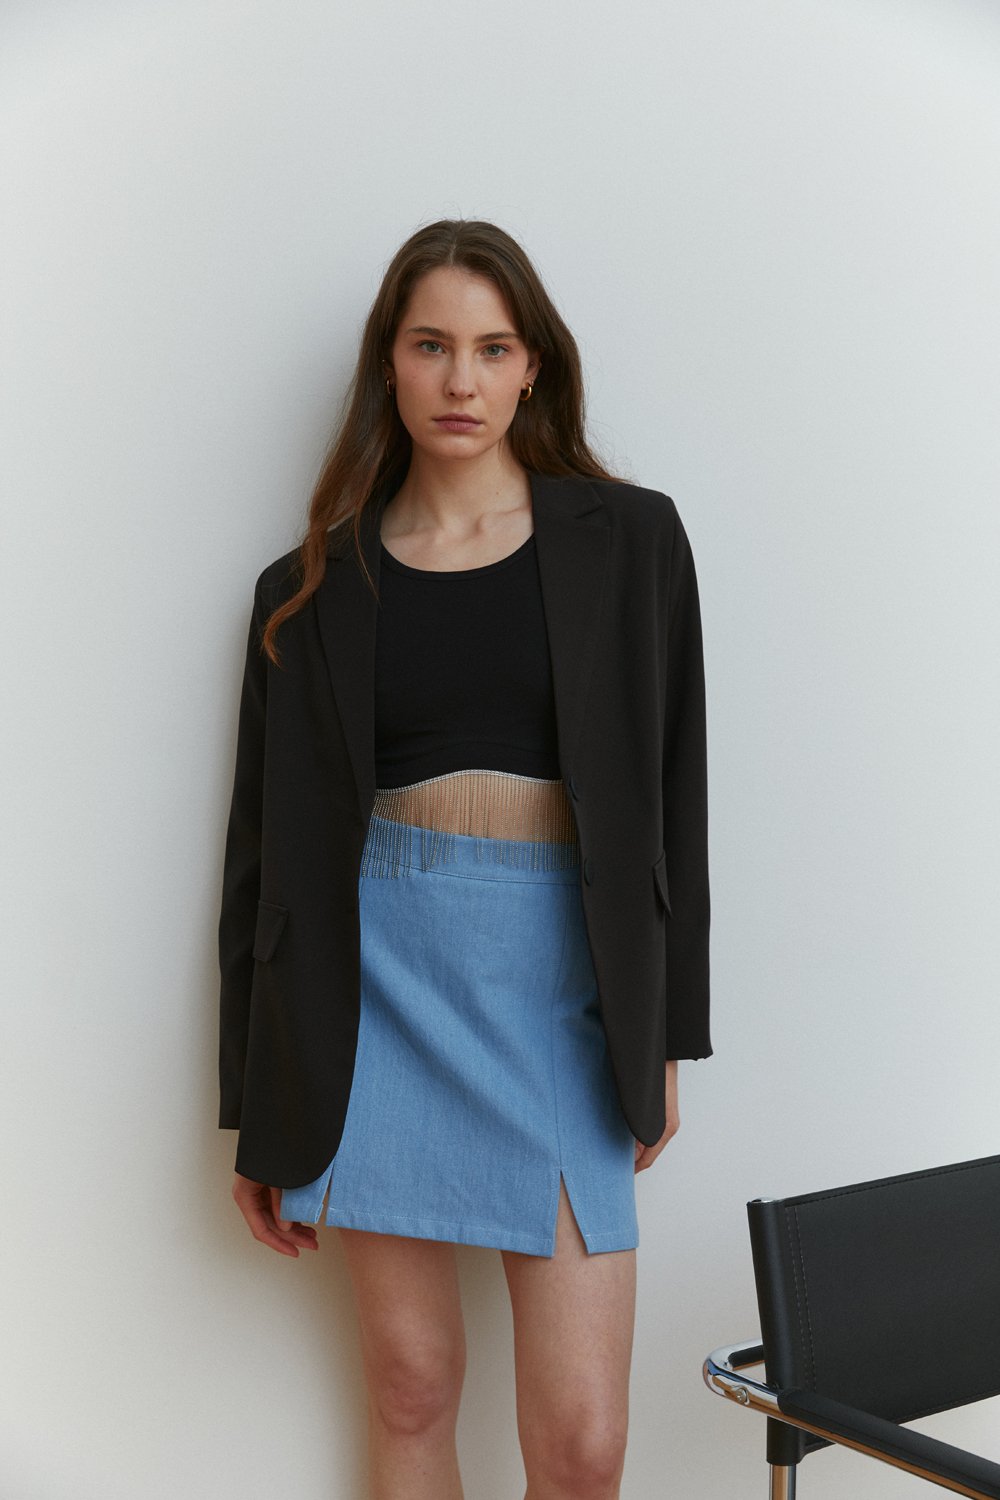 Light blue denim miniskirt with elegant front slits